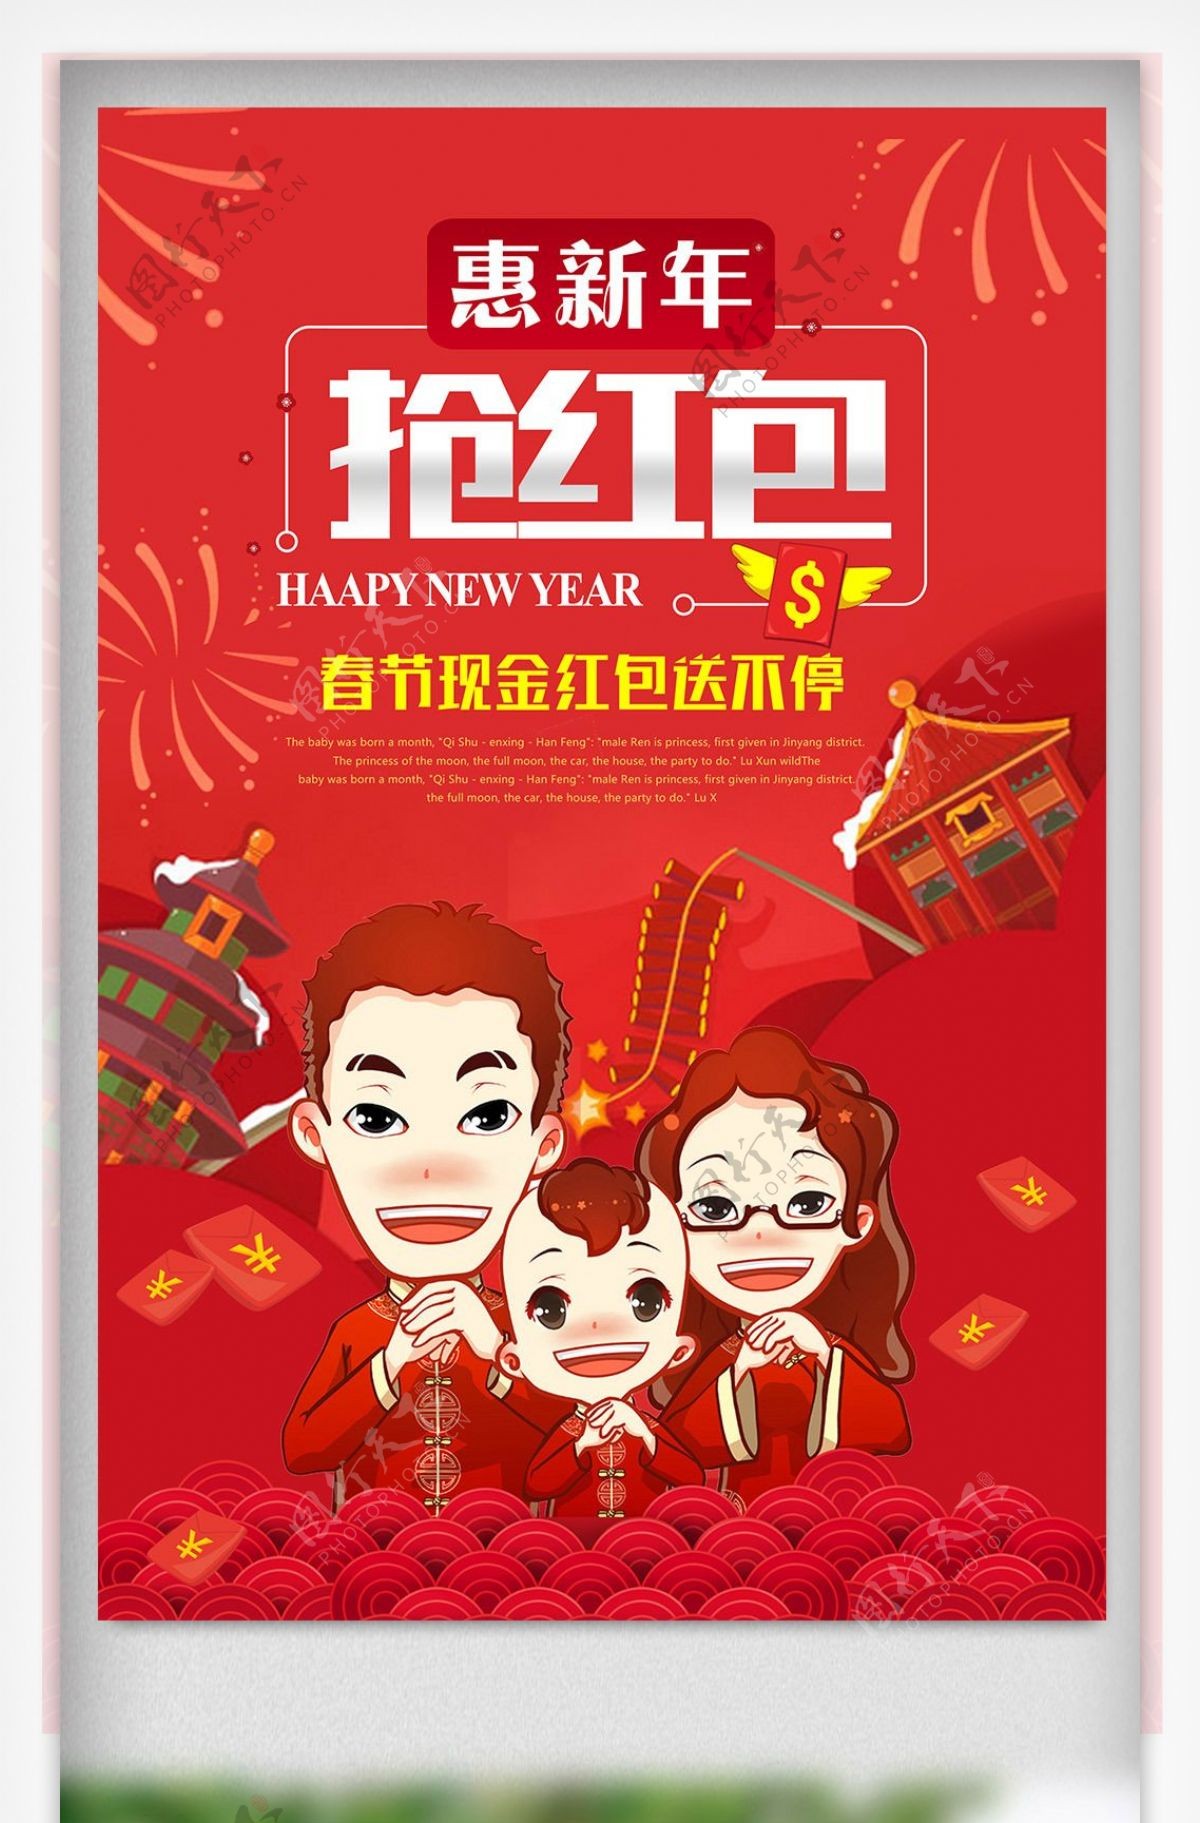 2018创意时尚春节新年红包宣传海报